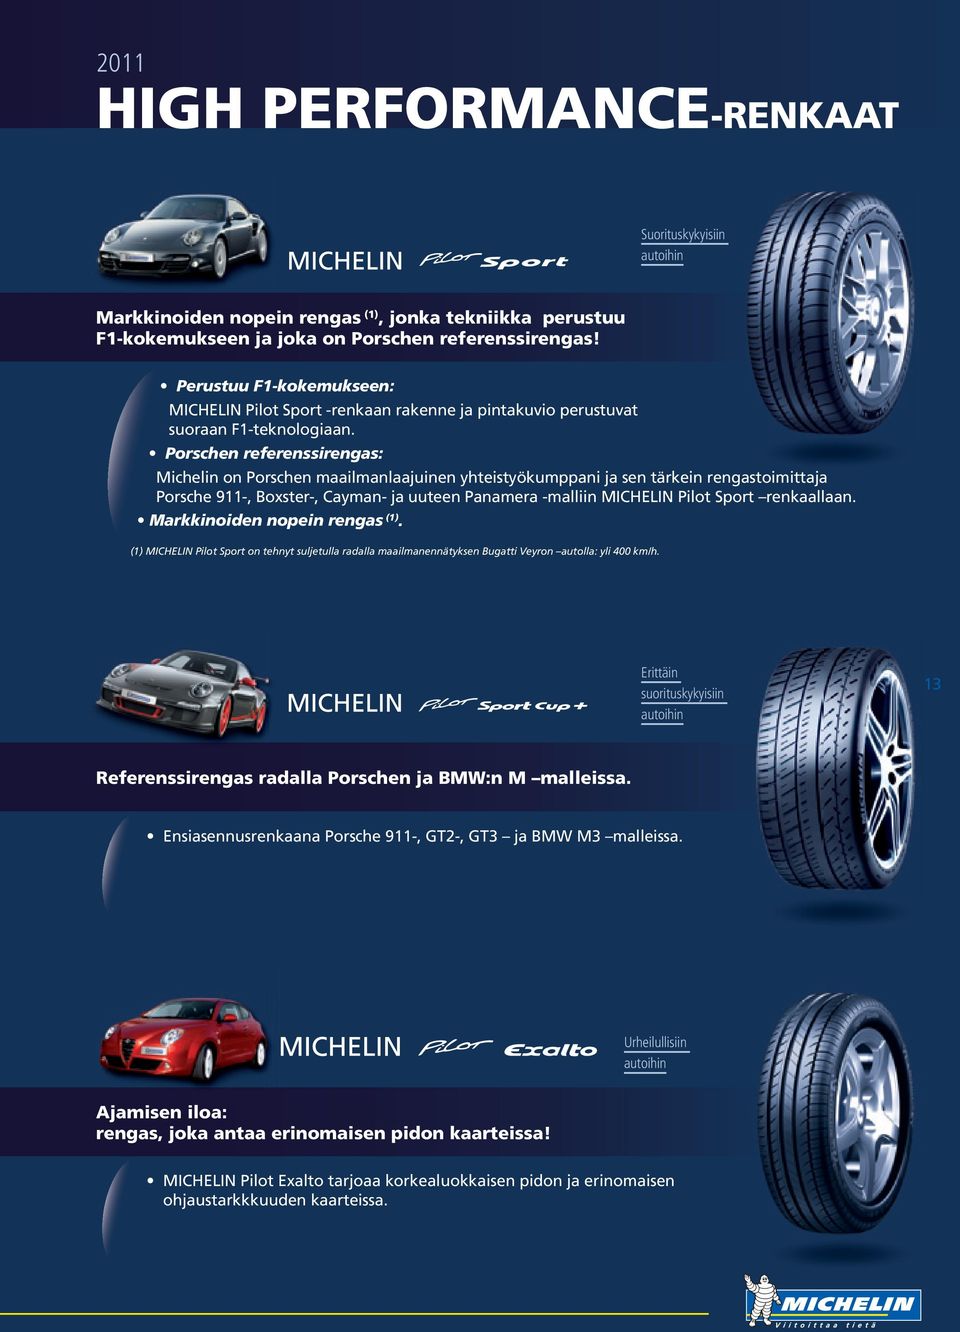 Porschen referenssirengas: Michelin on Porschen maailmanlaajuinen yhteistyökumppani ja sen tärkein rengastoimittaja Porsche 911-, Boxster-, Cayman- ja uuteen Panamera -malliin MICHELIN Pilot Sport